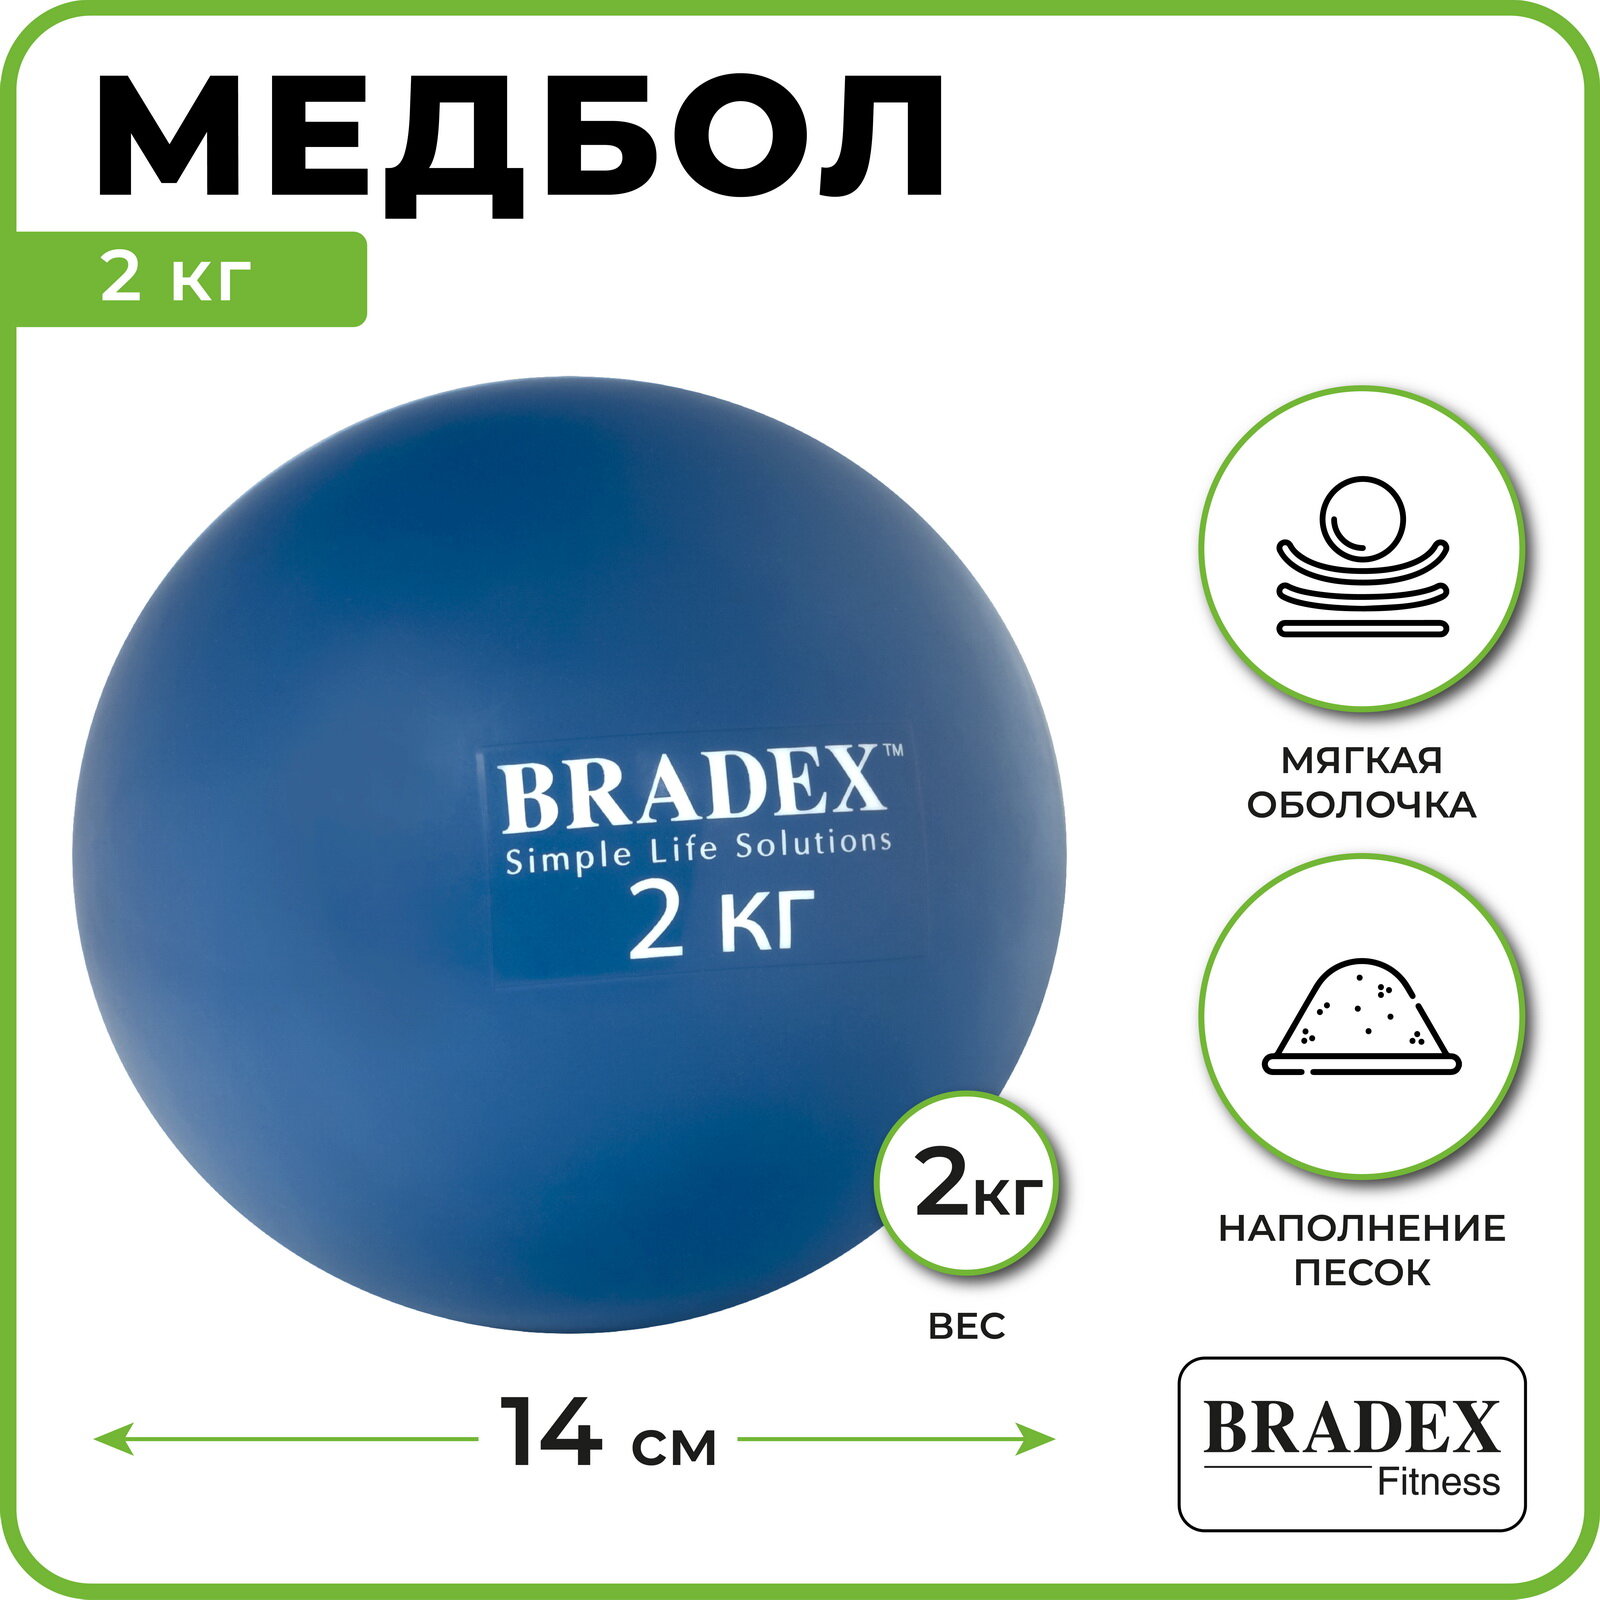 Медбол Bradex, 2 кг, - фото №2